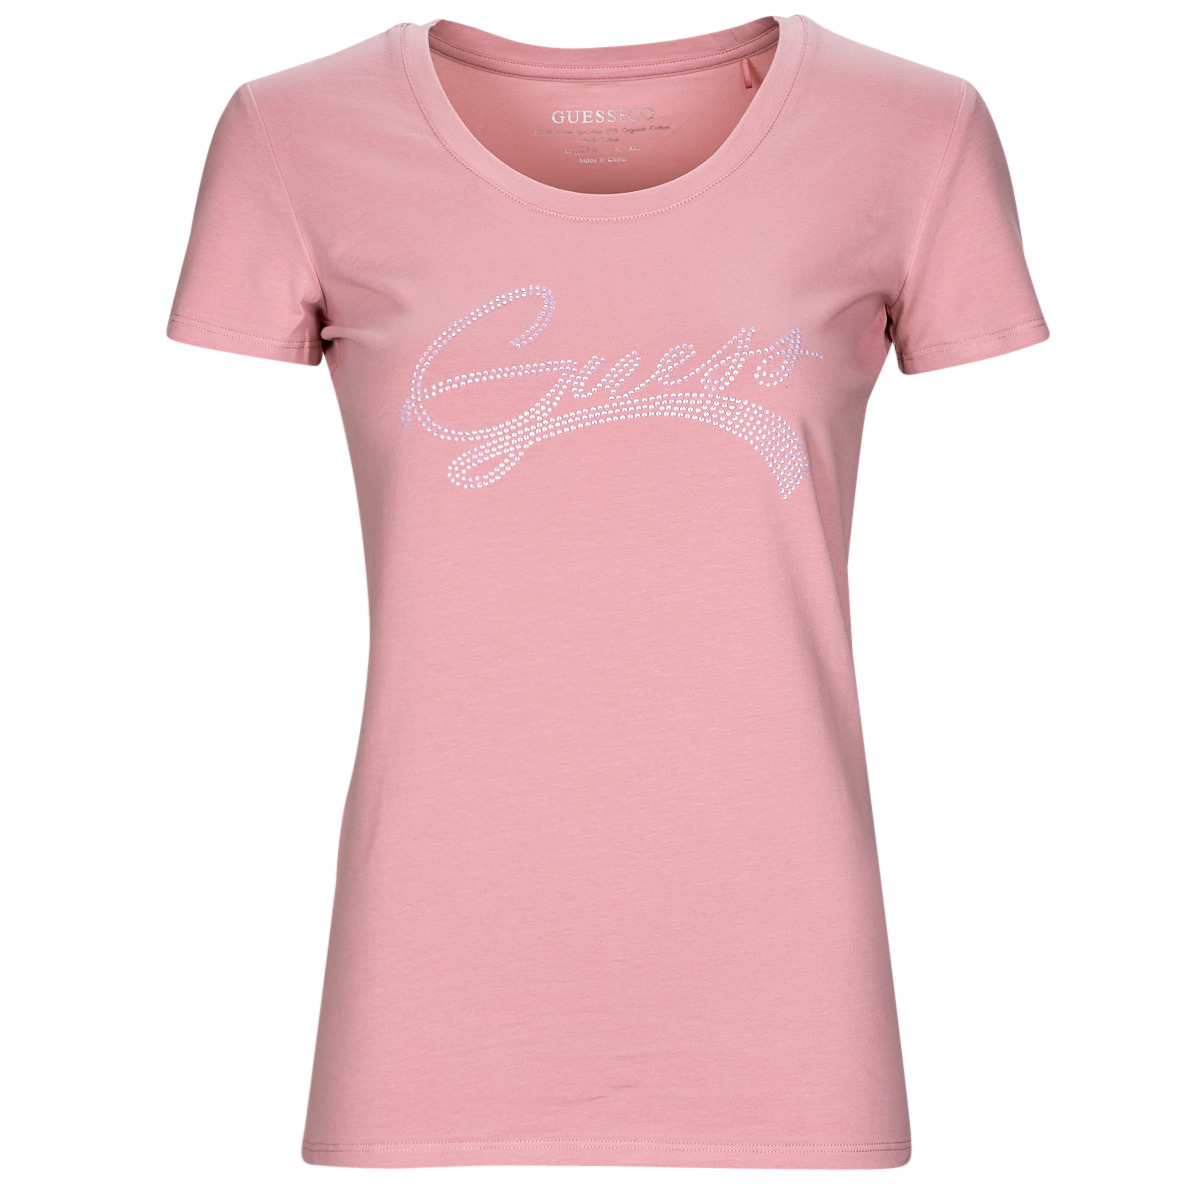 vaatteet Naiset Lyhythihainen t-paita Guess SS RN ADELINA TEE Vaaleanpunainen